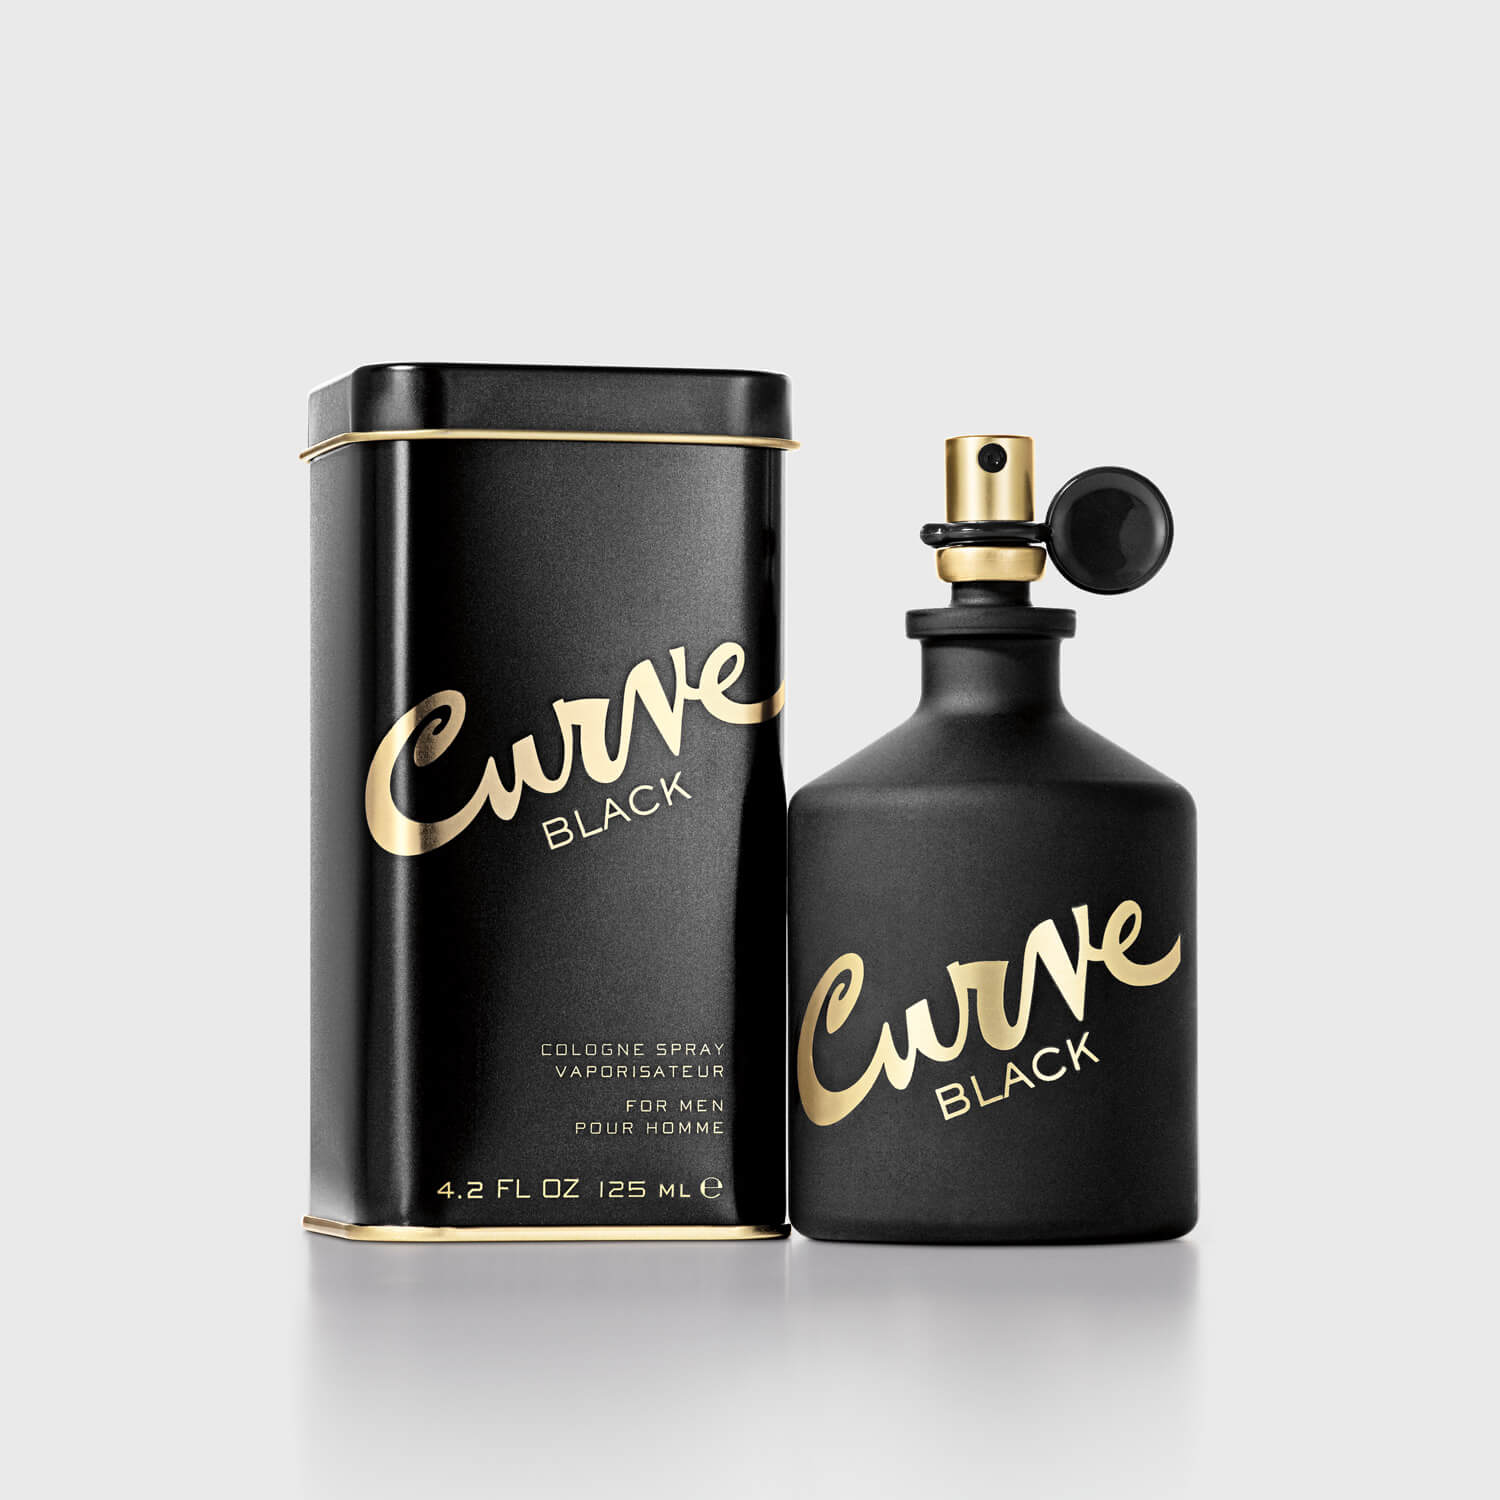 Curve Fragrances for Men - Official site of Curve for Men